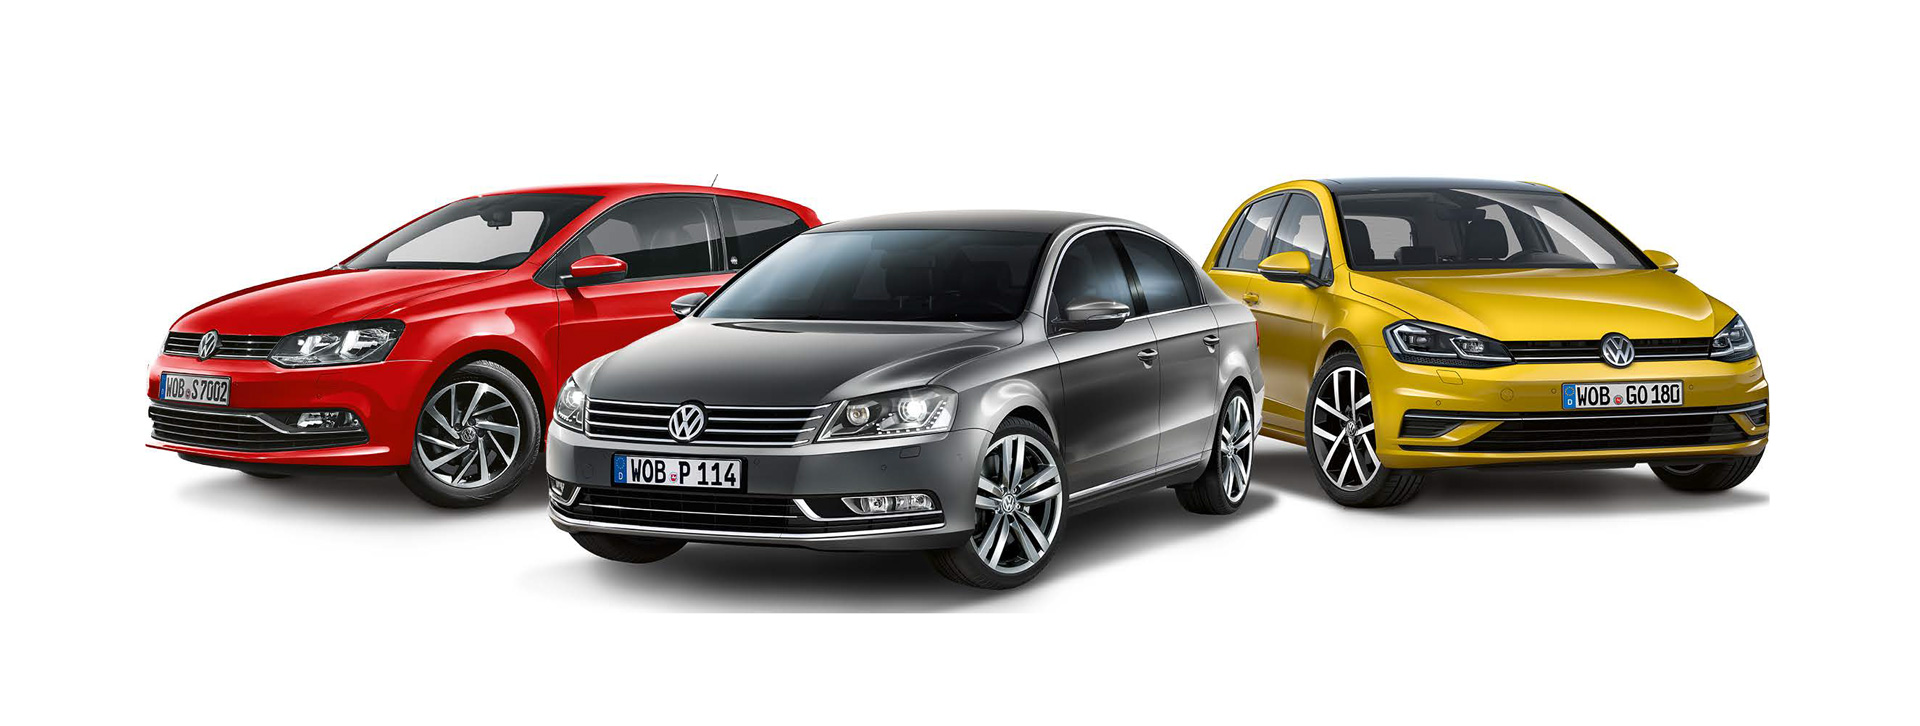 Modelle und Konfigurator | Volkswagen Deutschland